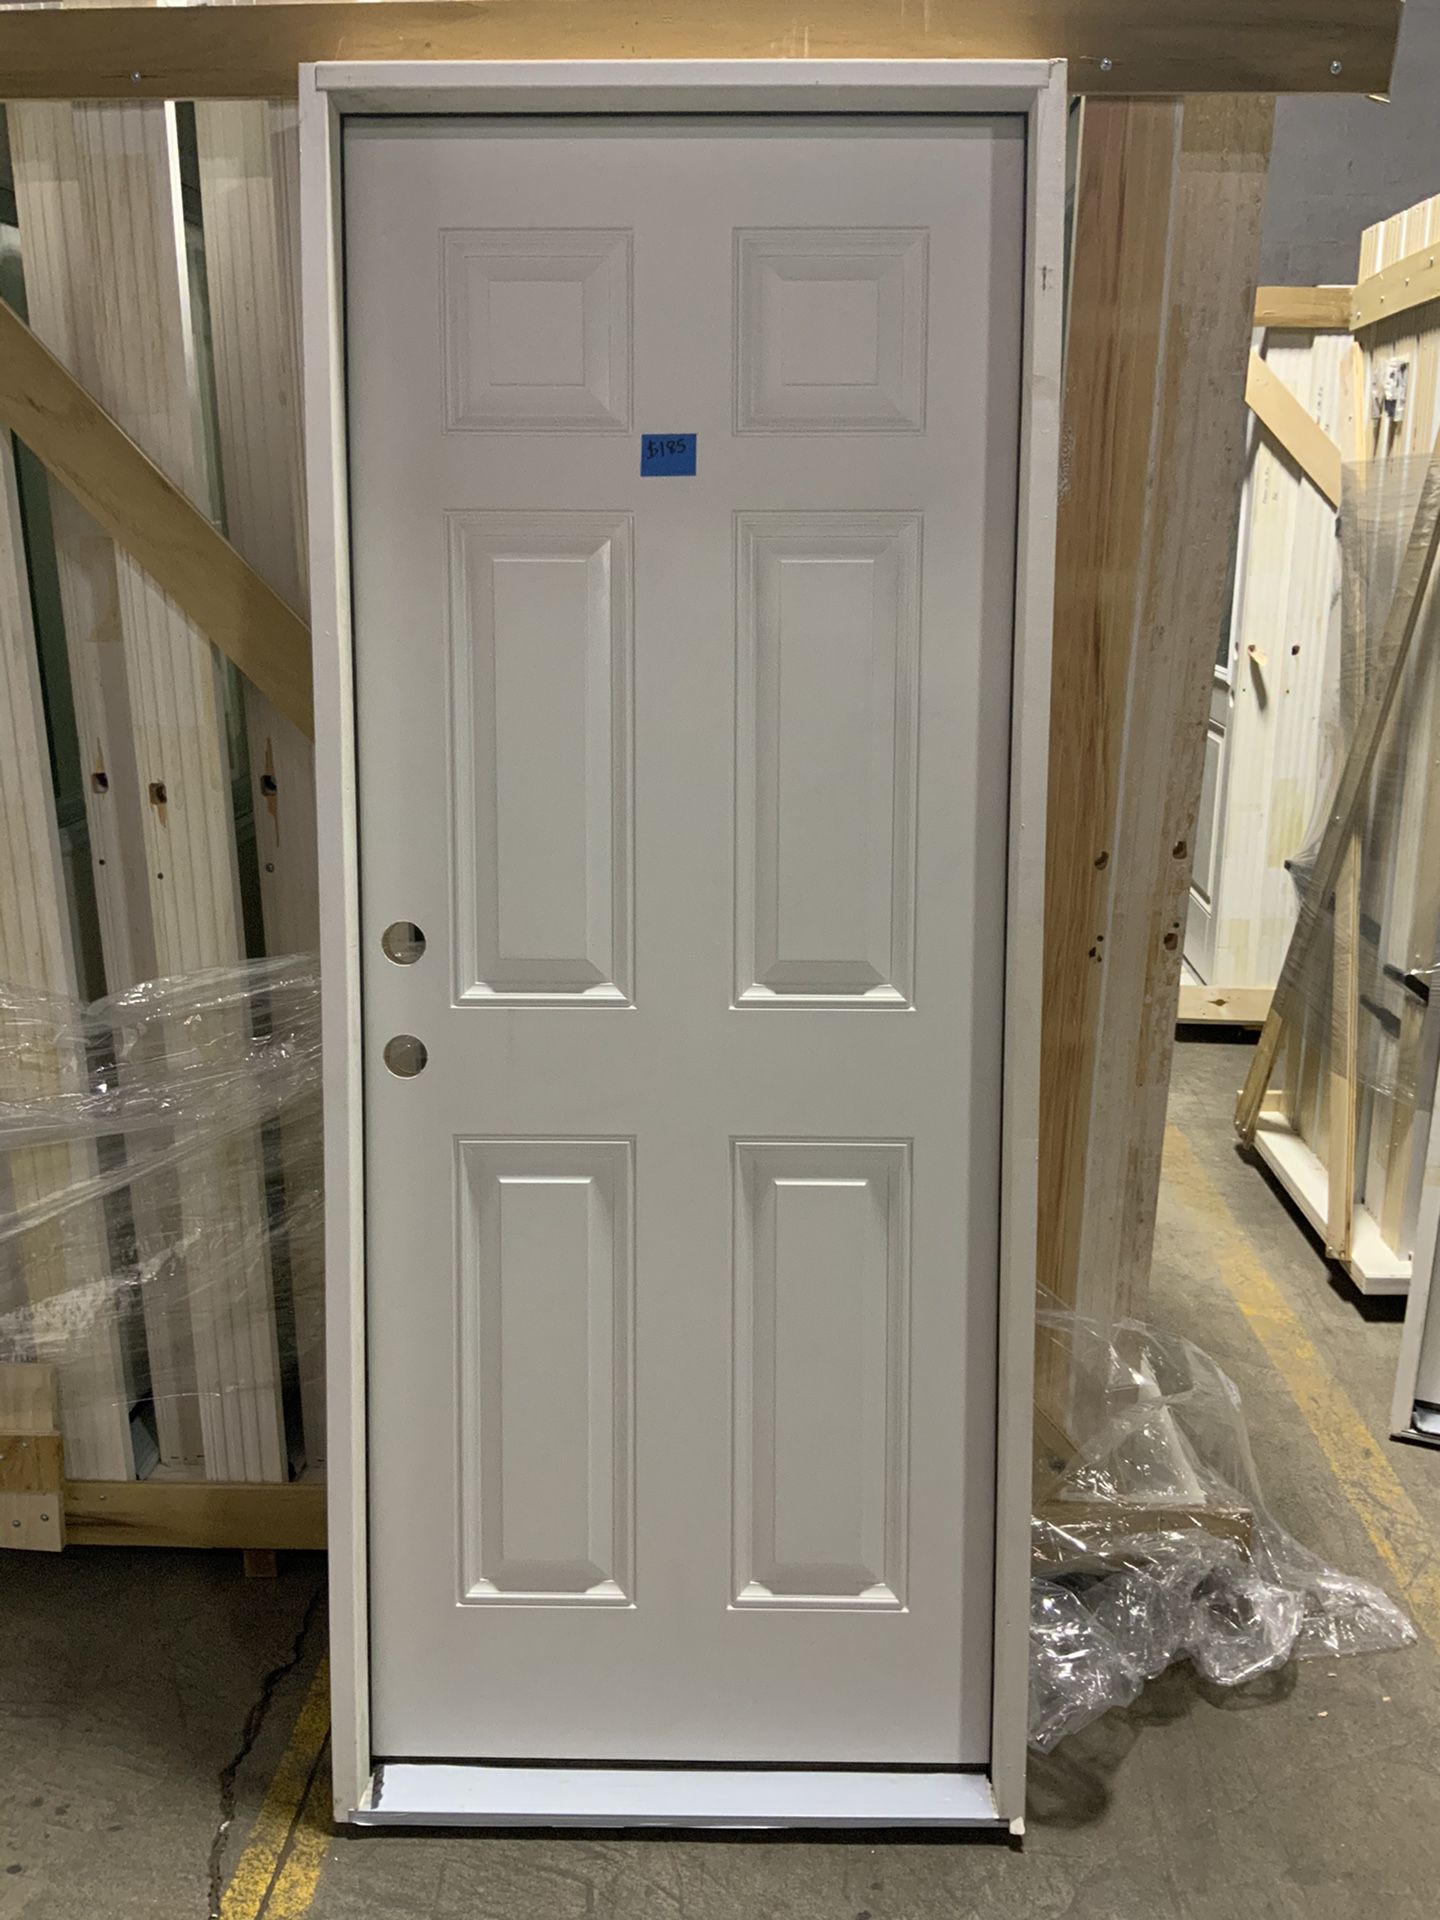 Exterior fiberglass door 32” x 80” for sale!